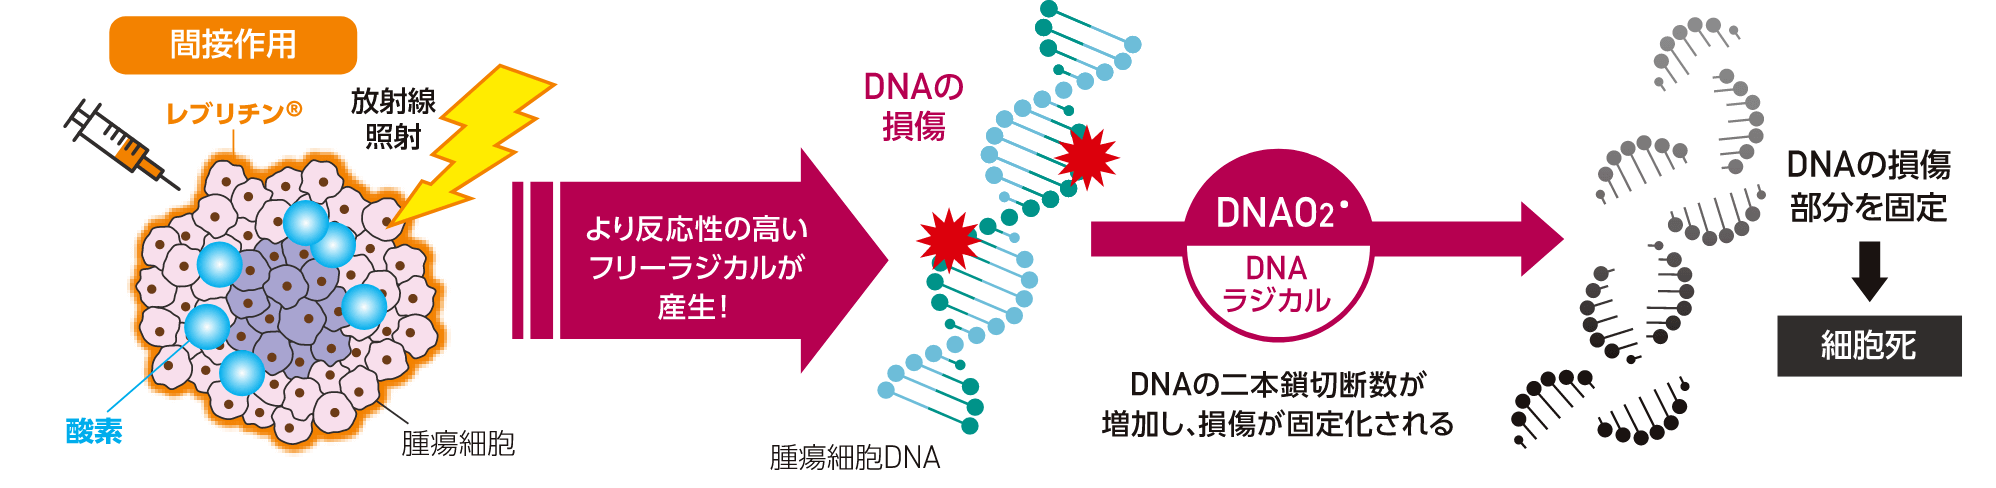 放射線照射による腫瘍細胞のDNA損傷の固定化作用